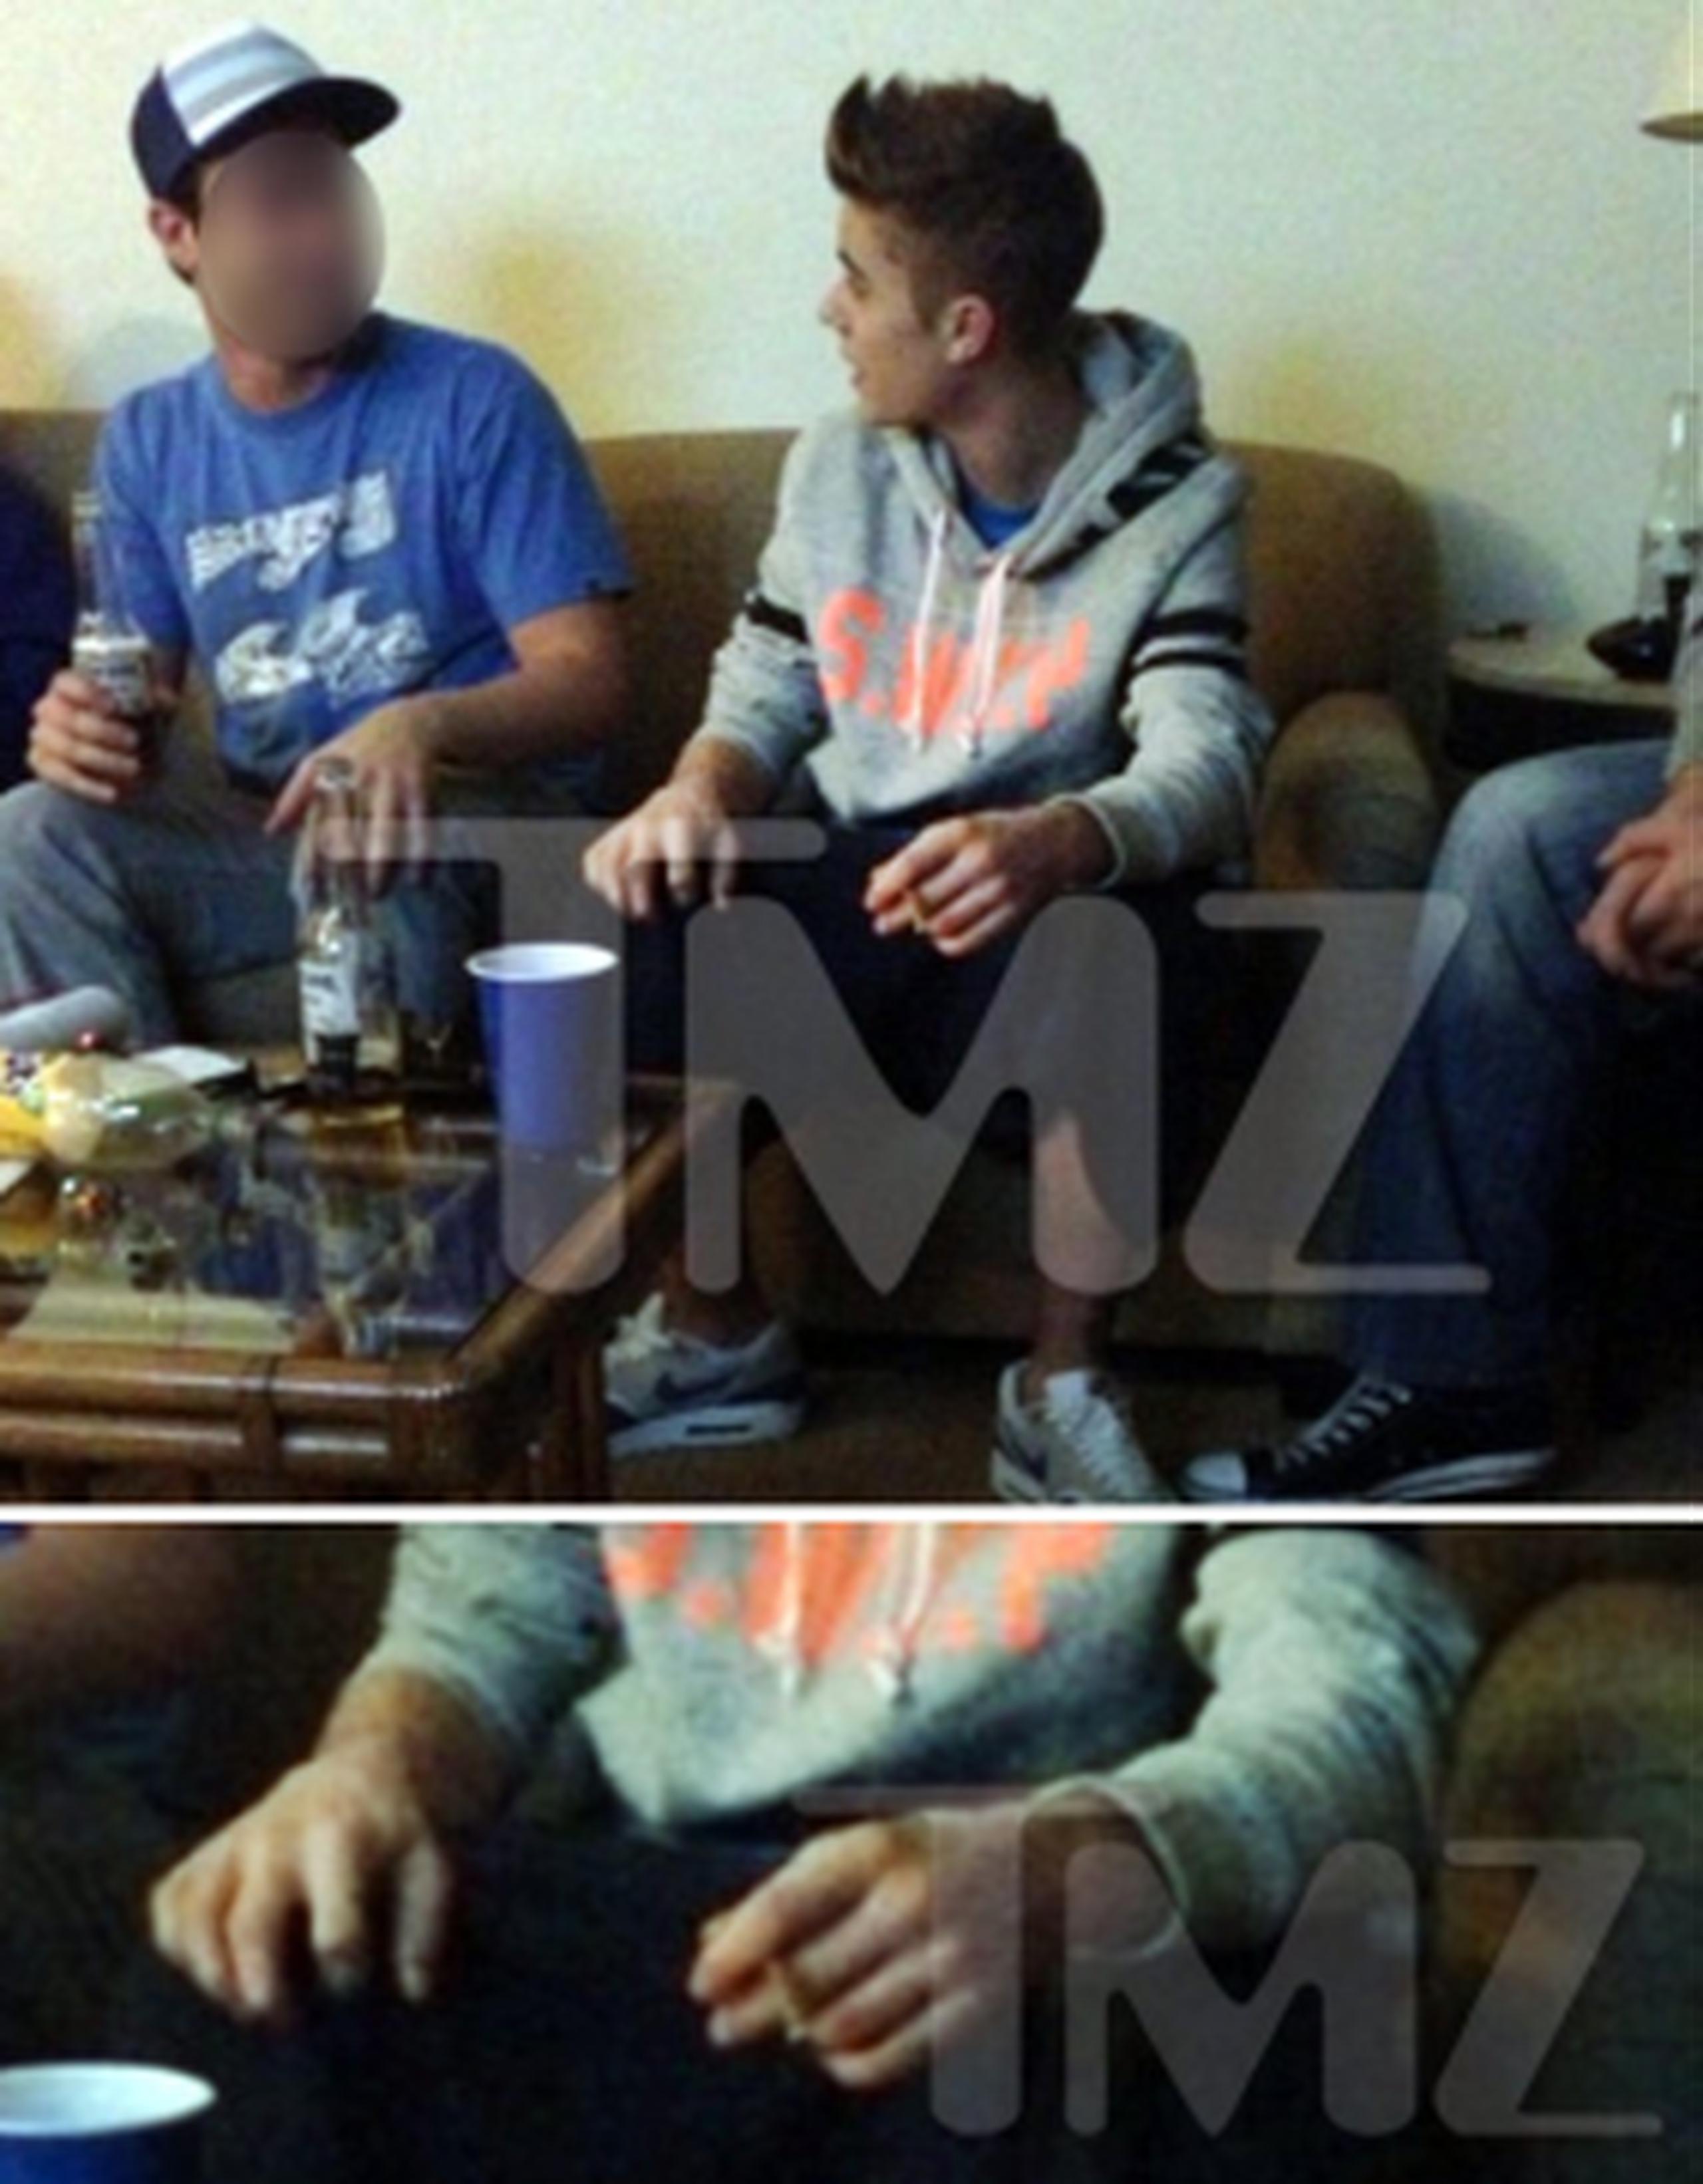 El portal de noticias TMZ publicó fotos del cantante en donde presumiblemente se lo ve fumando marihuana. (TMZ)